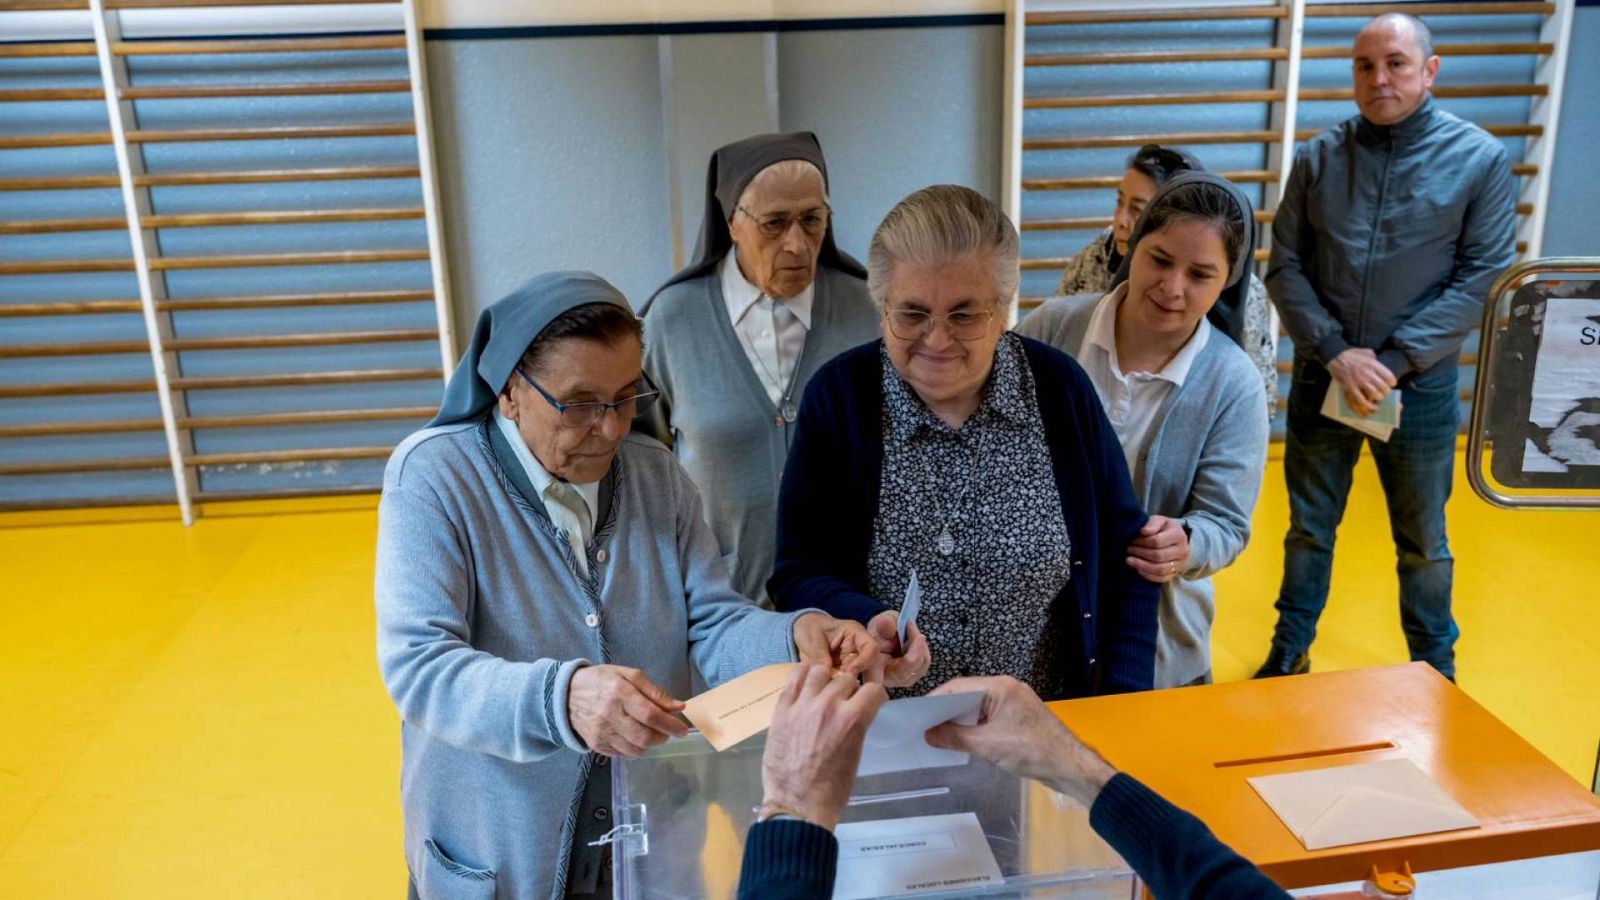 Unas monjas hacen cola para ejercer su derecho al voto en el colegio electoral de Corazón de María en María en Madrid.